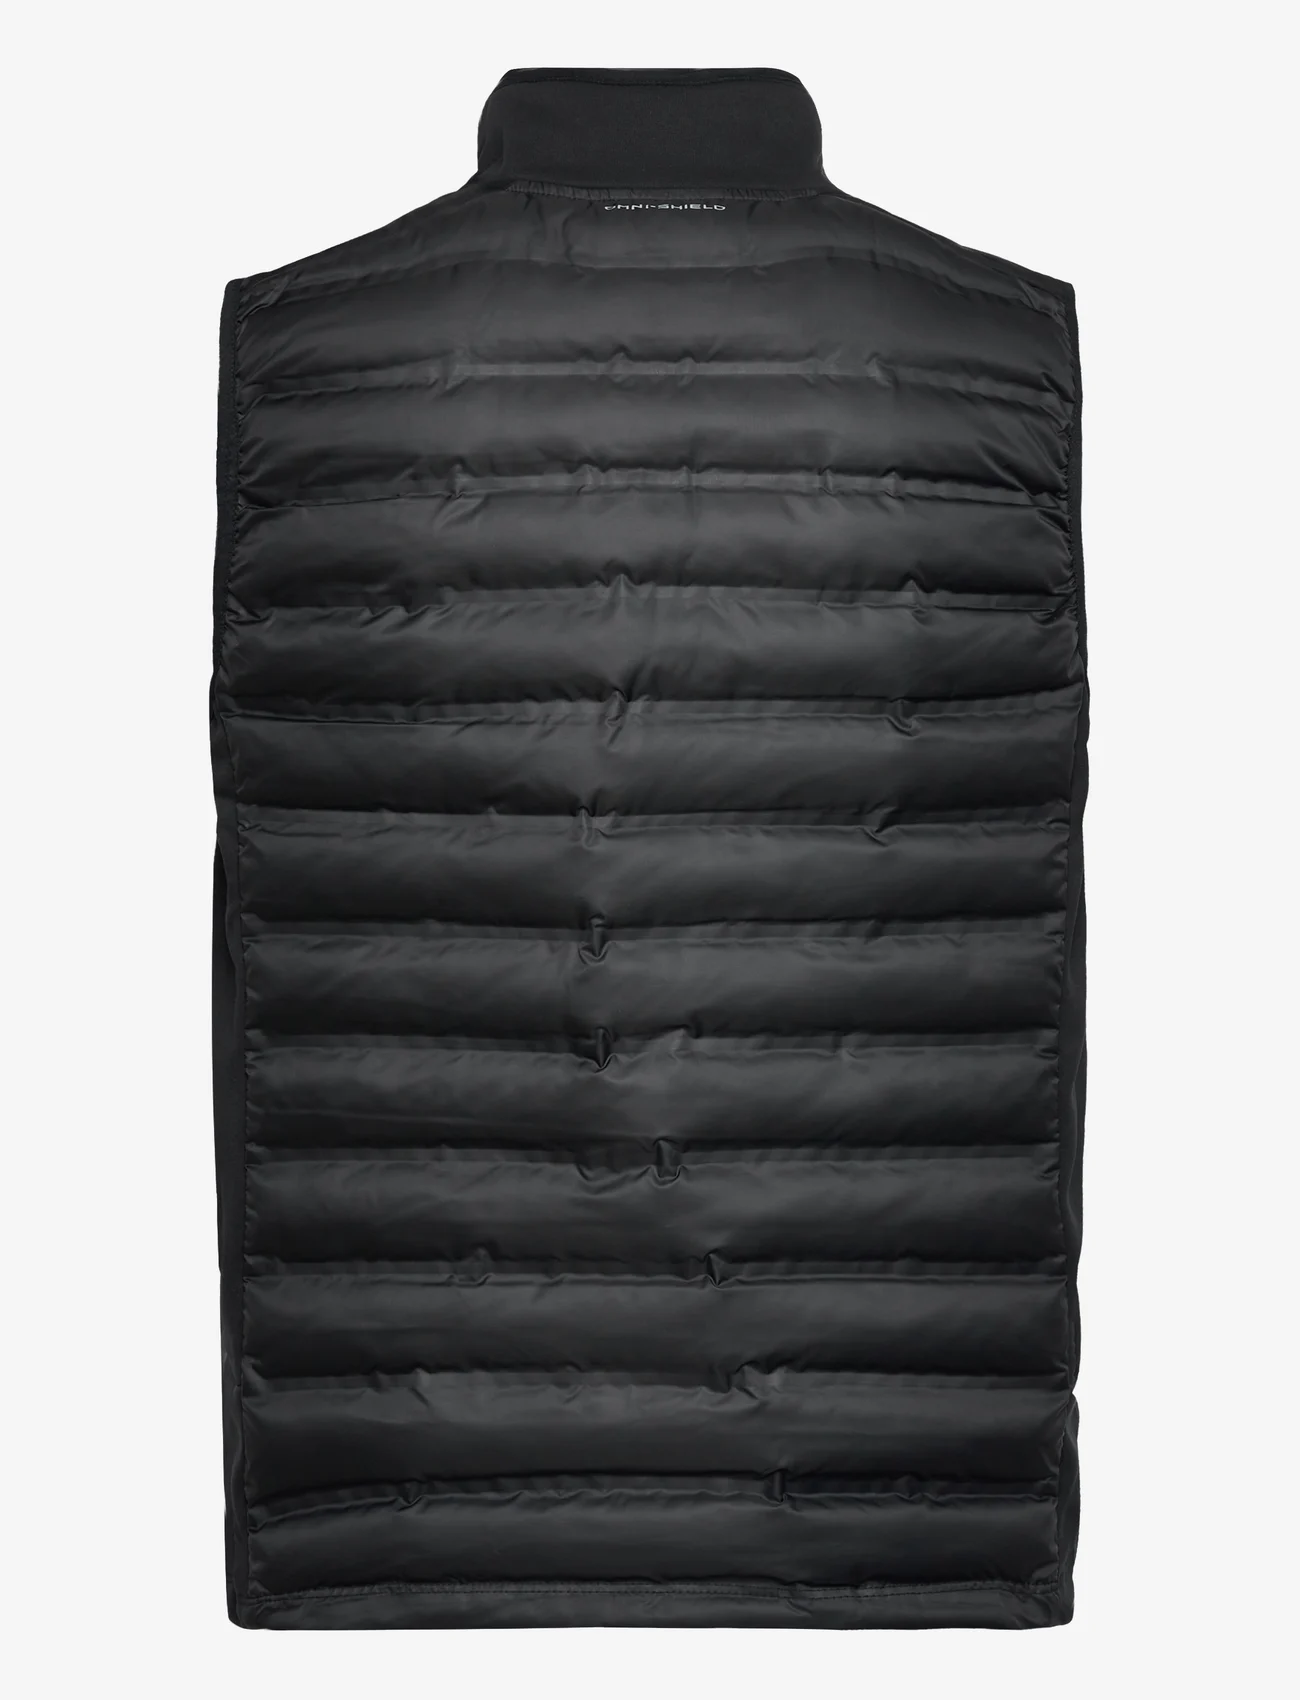 Columbia Sportswear - Out-Shield Hybrid Vest - lauko ir nuo lietaus apsaugančios striukės - black - 1